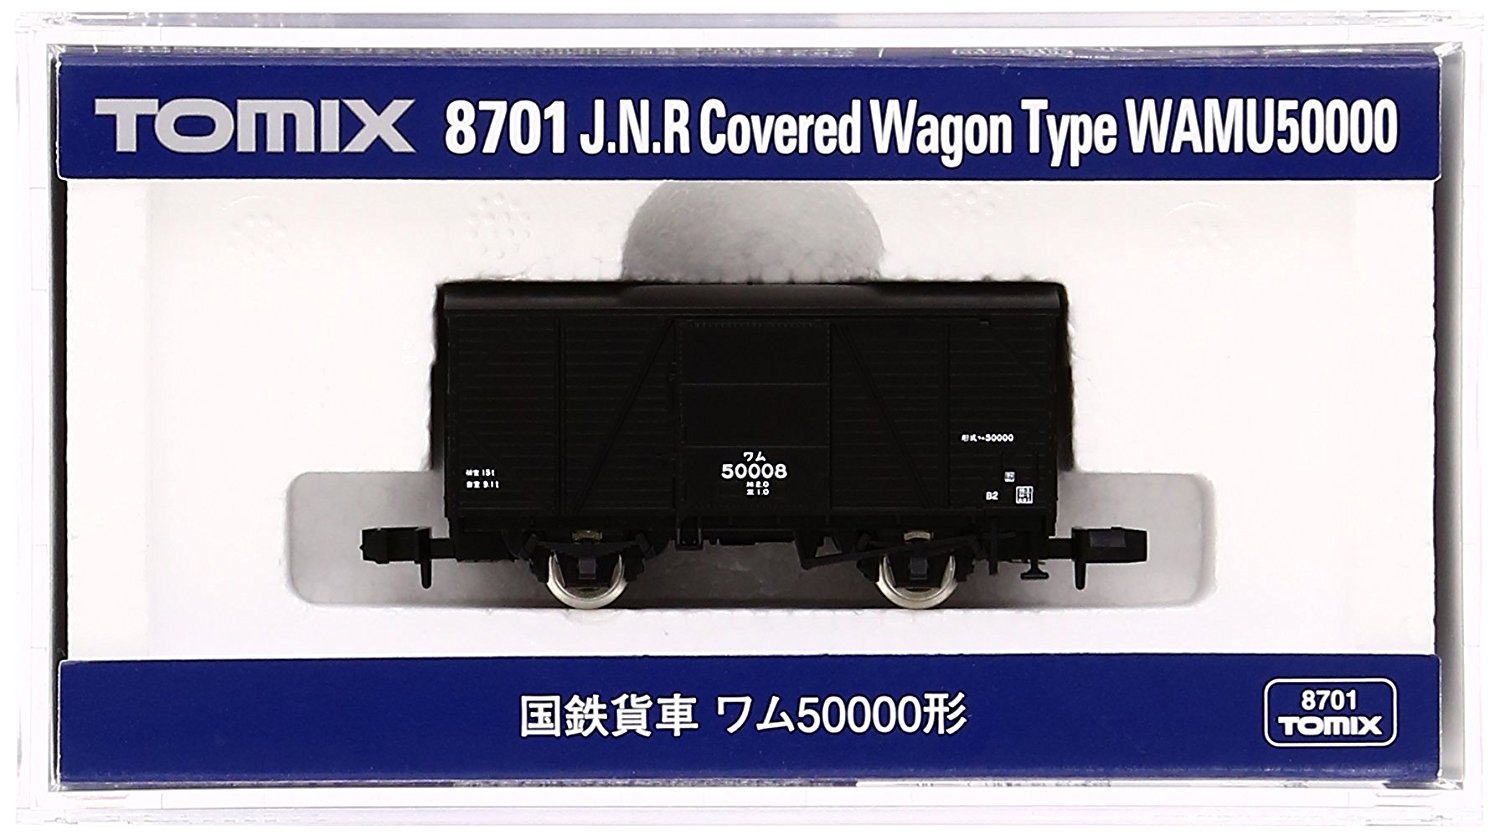 J.N.R. Covered Wagon Type Wamu50000